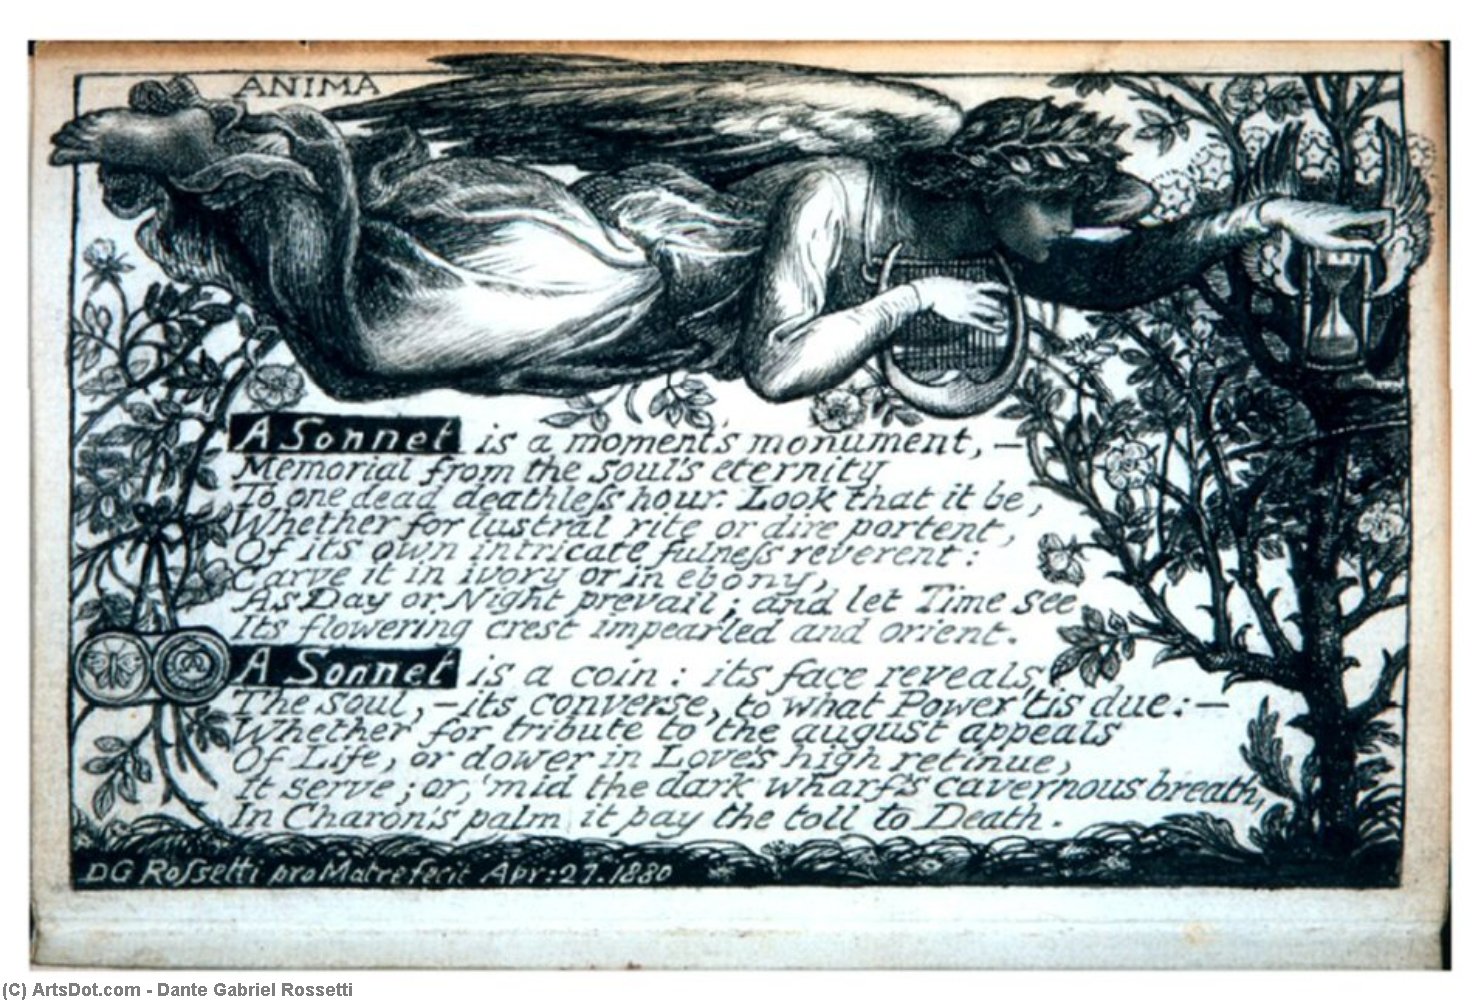 WikiOO.org - Encyclopedia of Fine Arts - Lukisan, Artwork Dante Gabriel Rossetti - A Sonnet